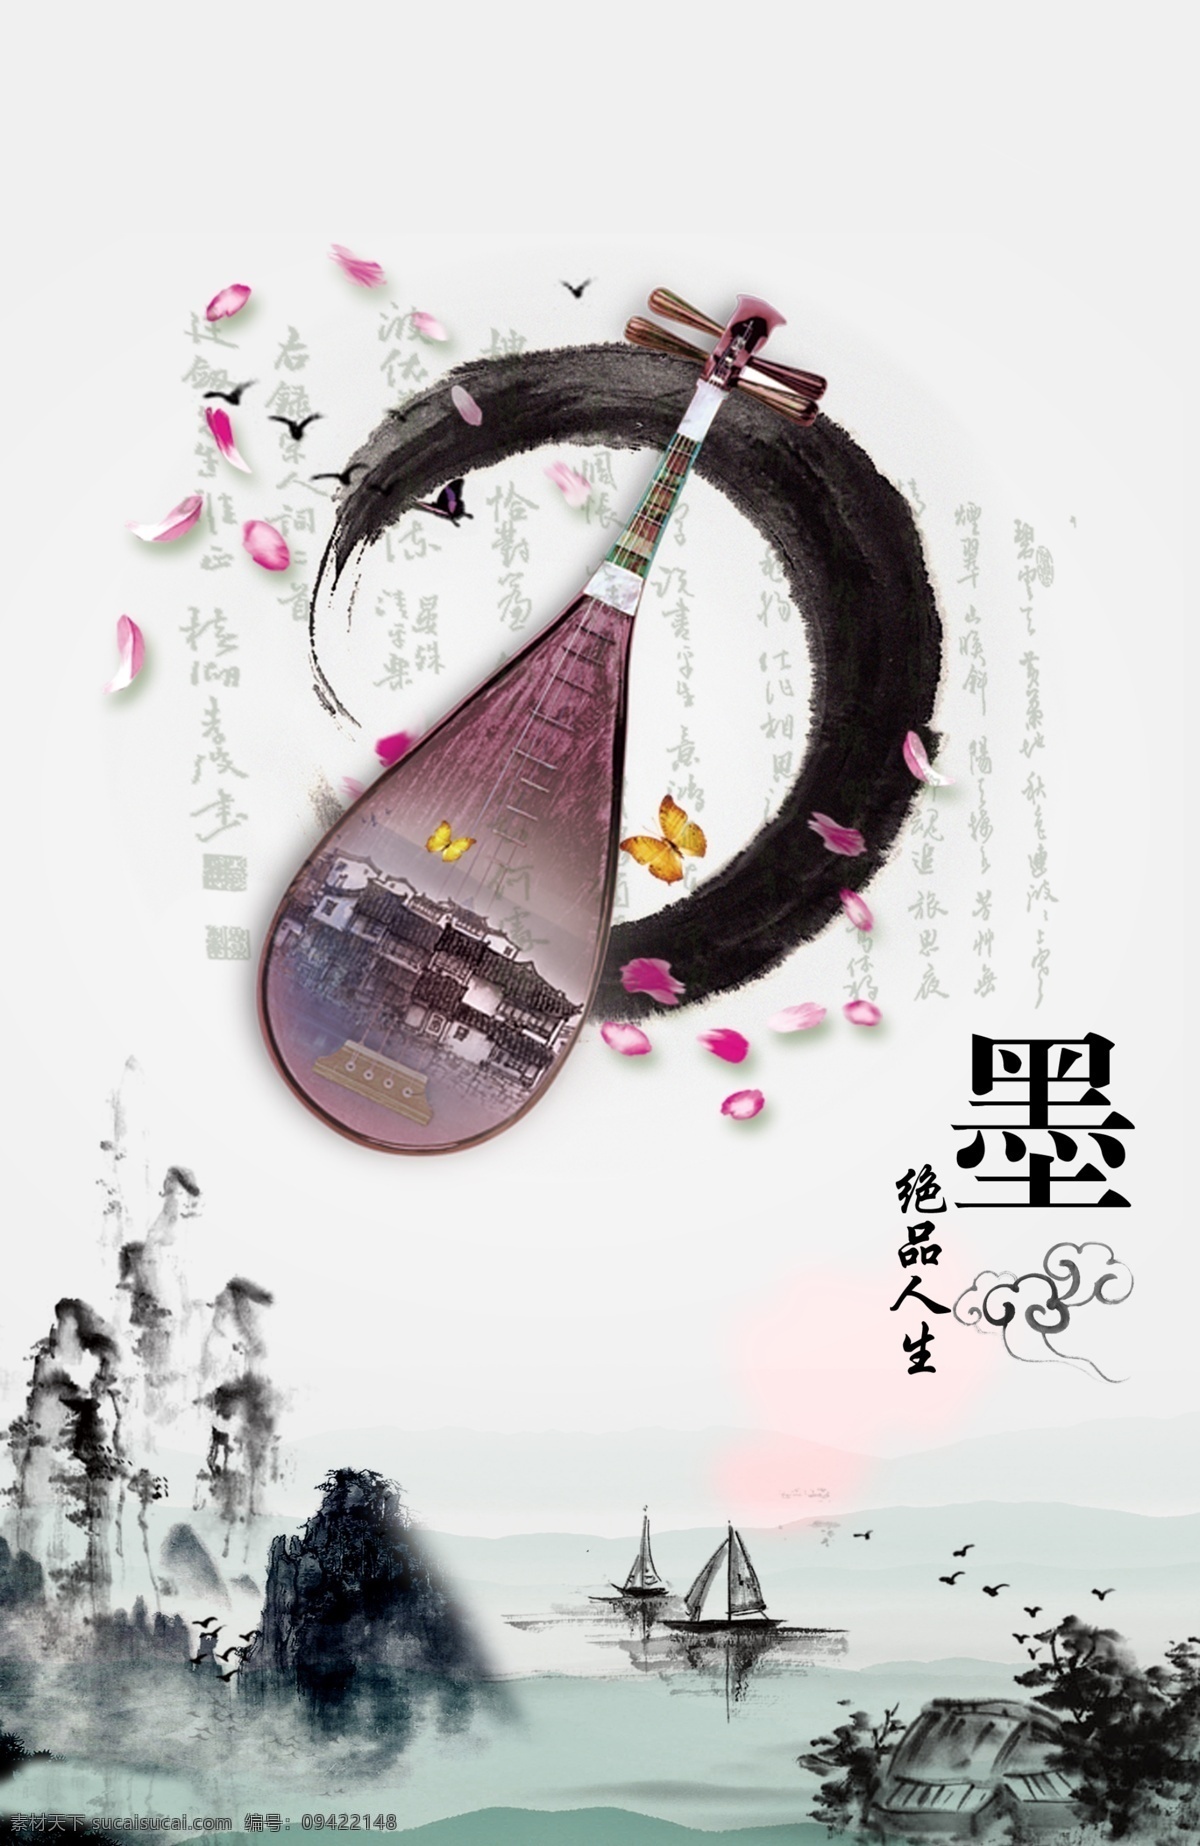 中国 风 展板 文化 琵琶 品味 水墨文化 展板文化 中国风 中国水墨文化 其他展板设计